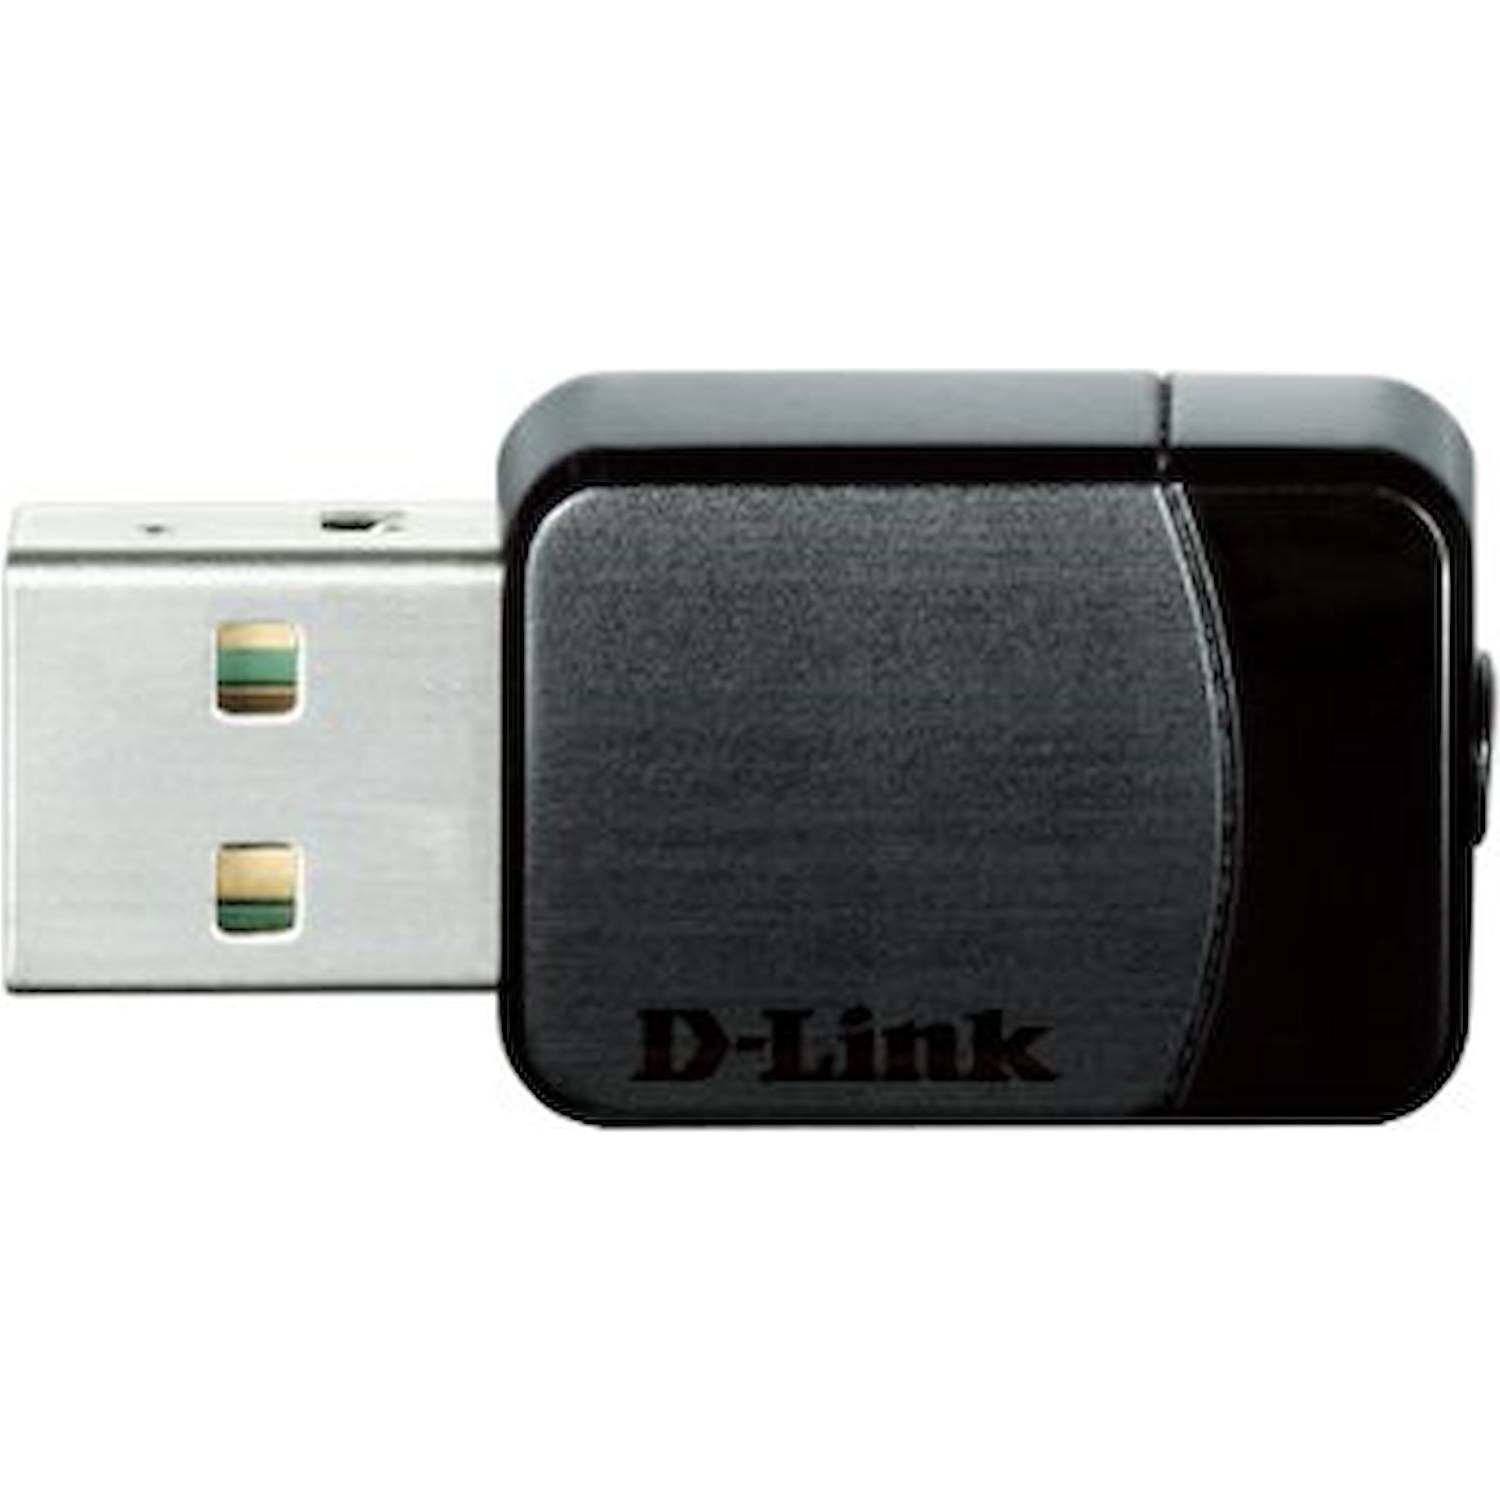 Immagine per Adattatore nano dongle D-Link USB AC600 DWA-171 da DIMOStore